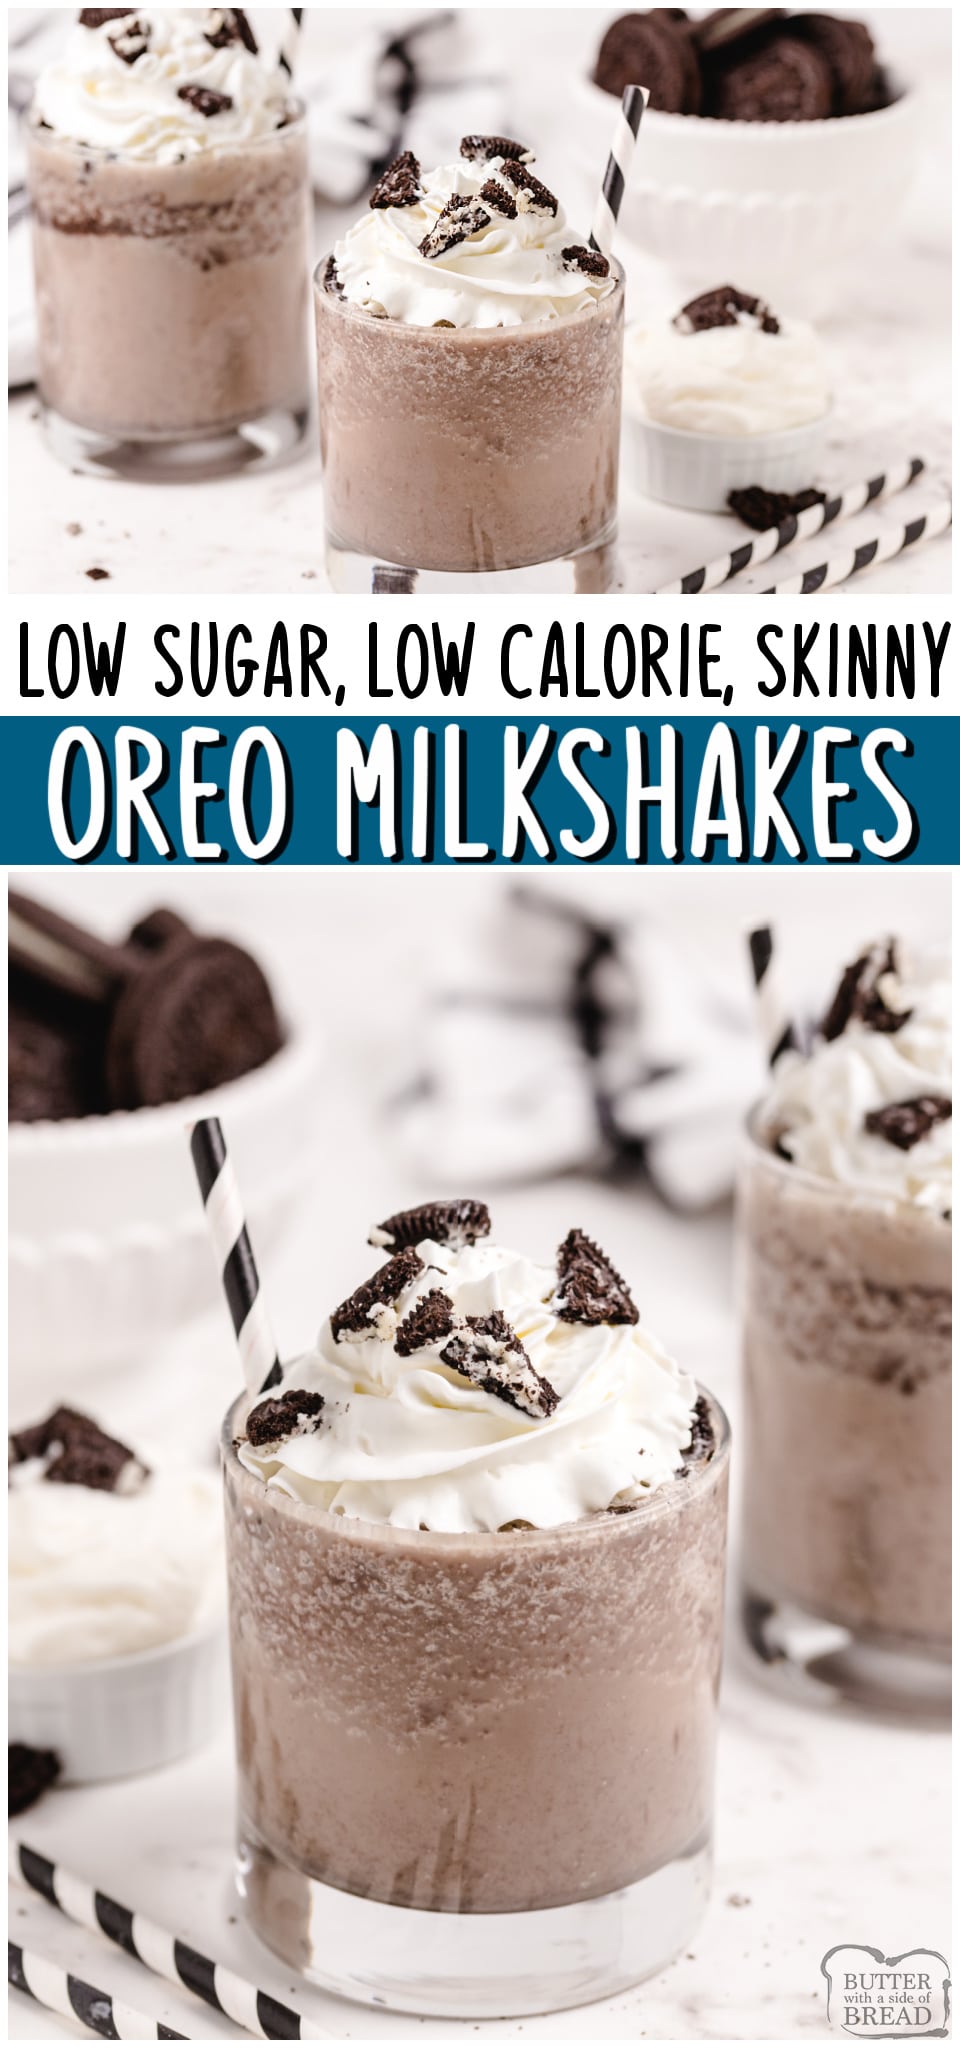 Skinny Oreo Milkshakes made fast with just a handful of ingredients! This easy Cookies & Cream Milkshake tastes great & is low cal, low fat & low sugar!